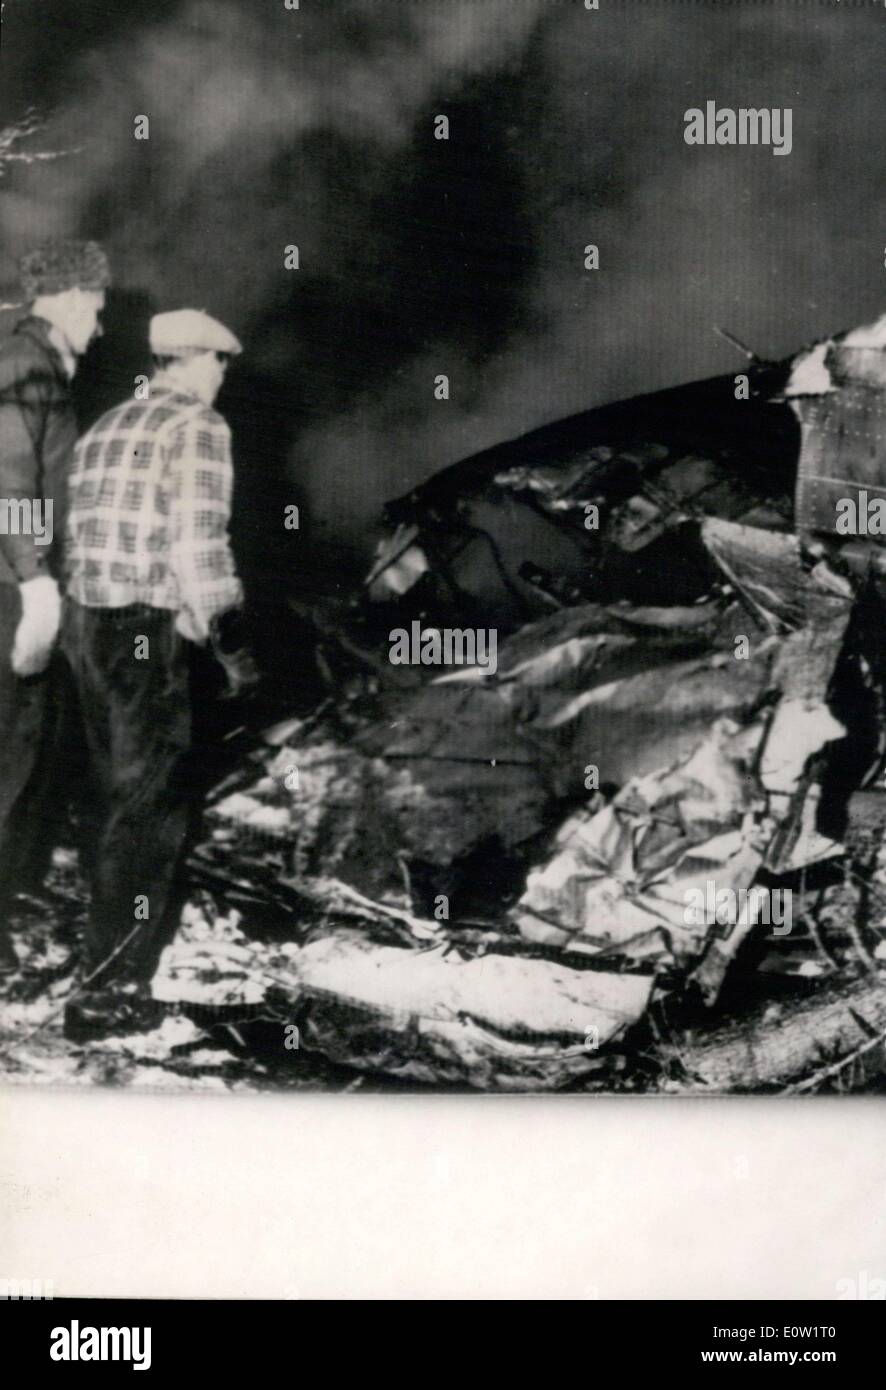 Jan. 03, 1961 - Plane Wreckage after Crash in Helsinki Leaves 25 Dead ...